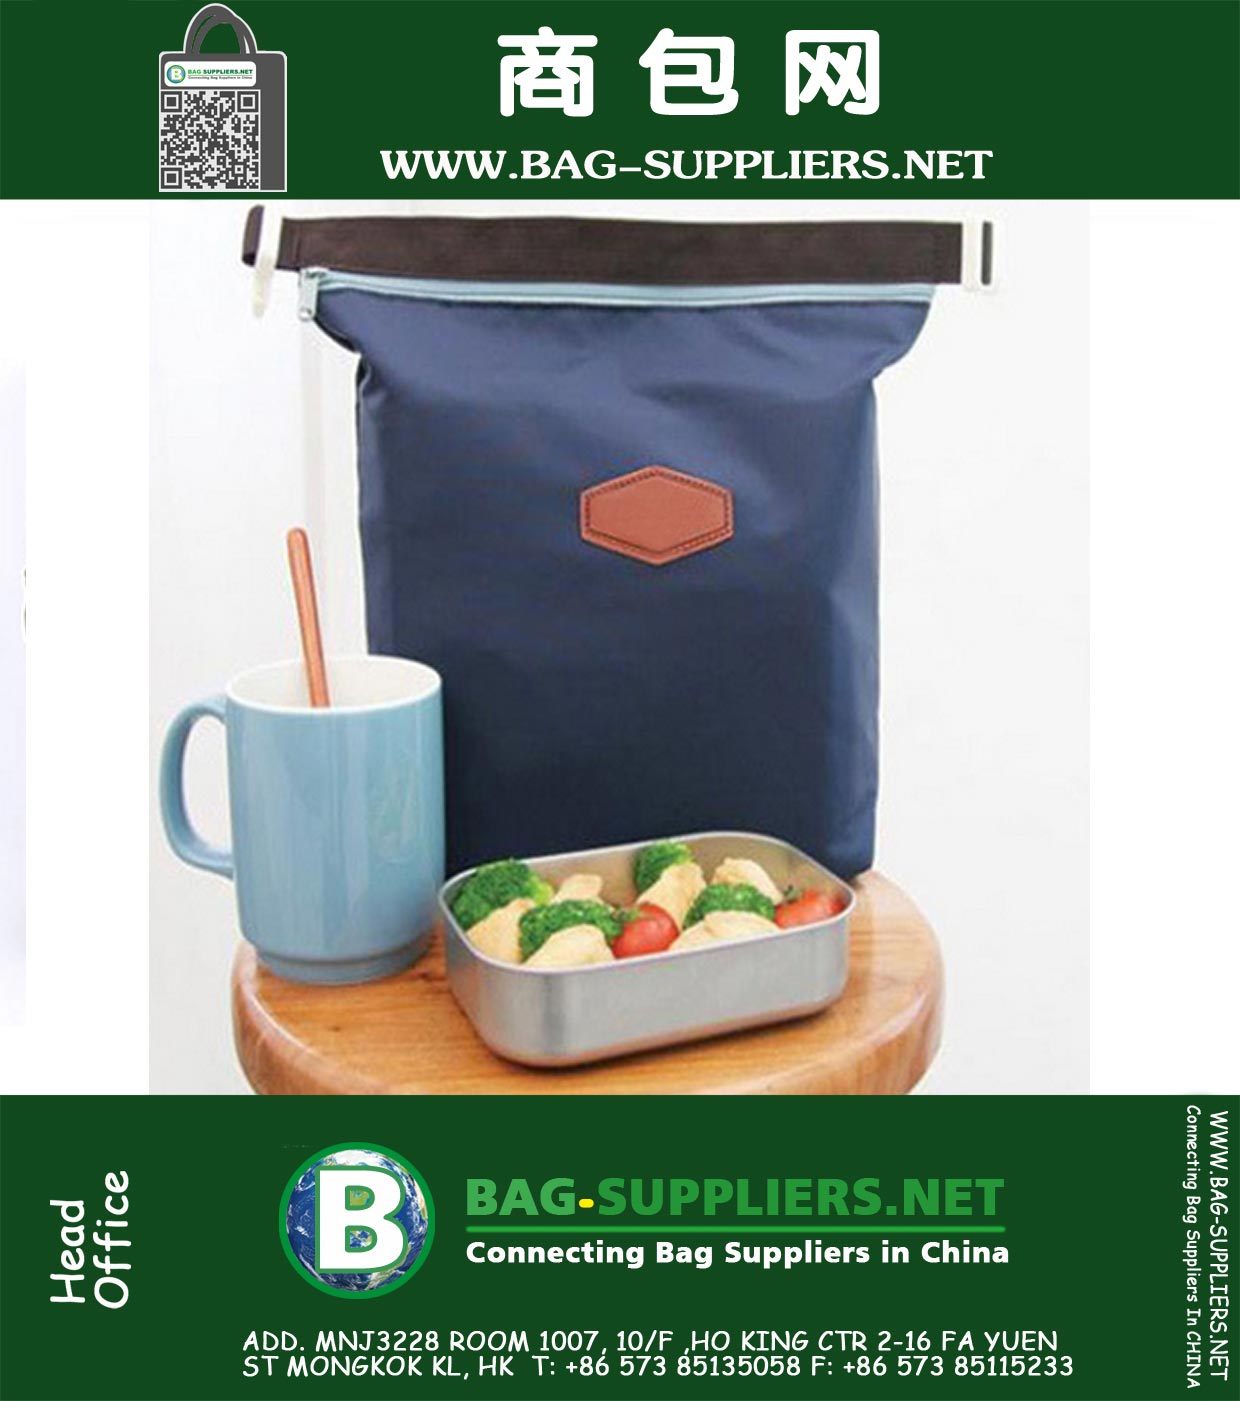 Bolsas de frío térmica impermeable aislante almuerzo portátil de mano Carry almacenamiento de la comida campestre bolsa de la casa para guardar herramientas de cocina